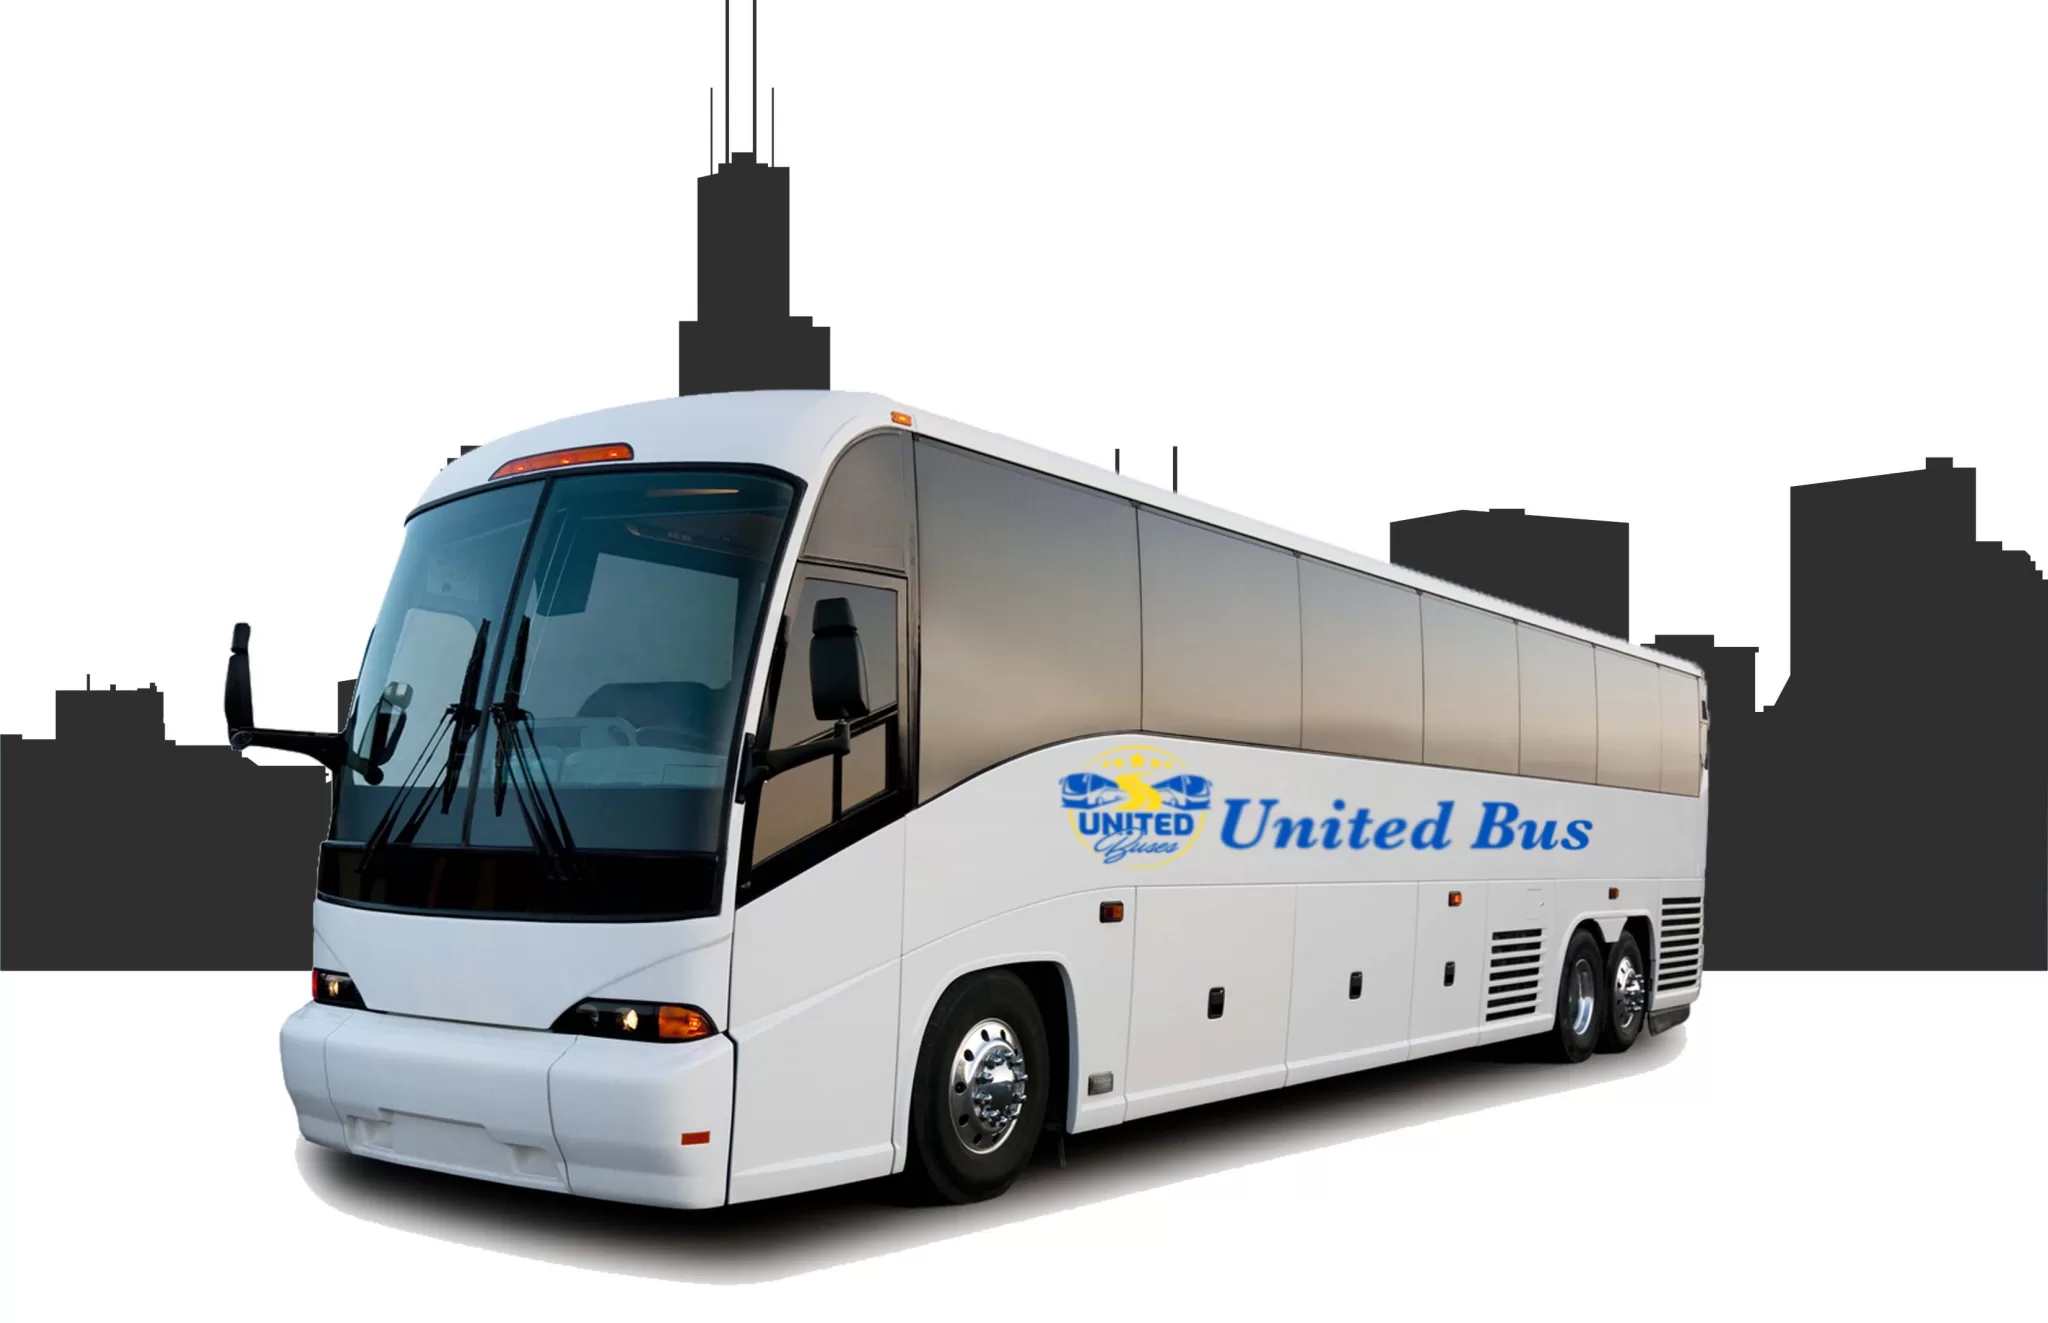 United Bus logo on bus